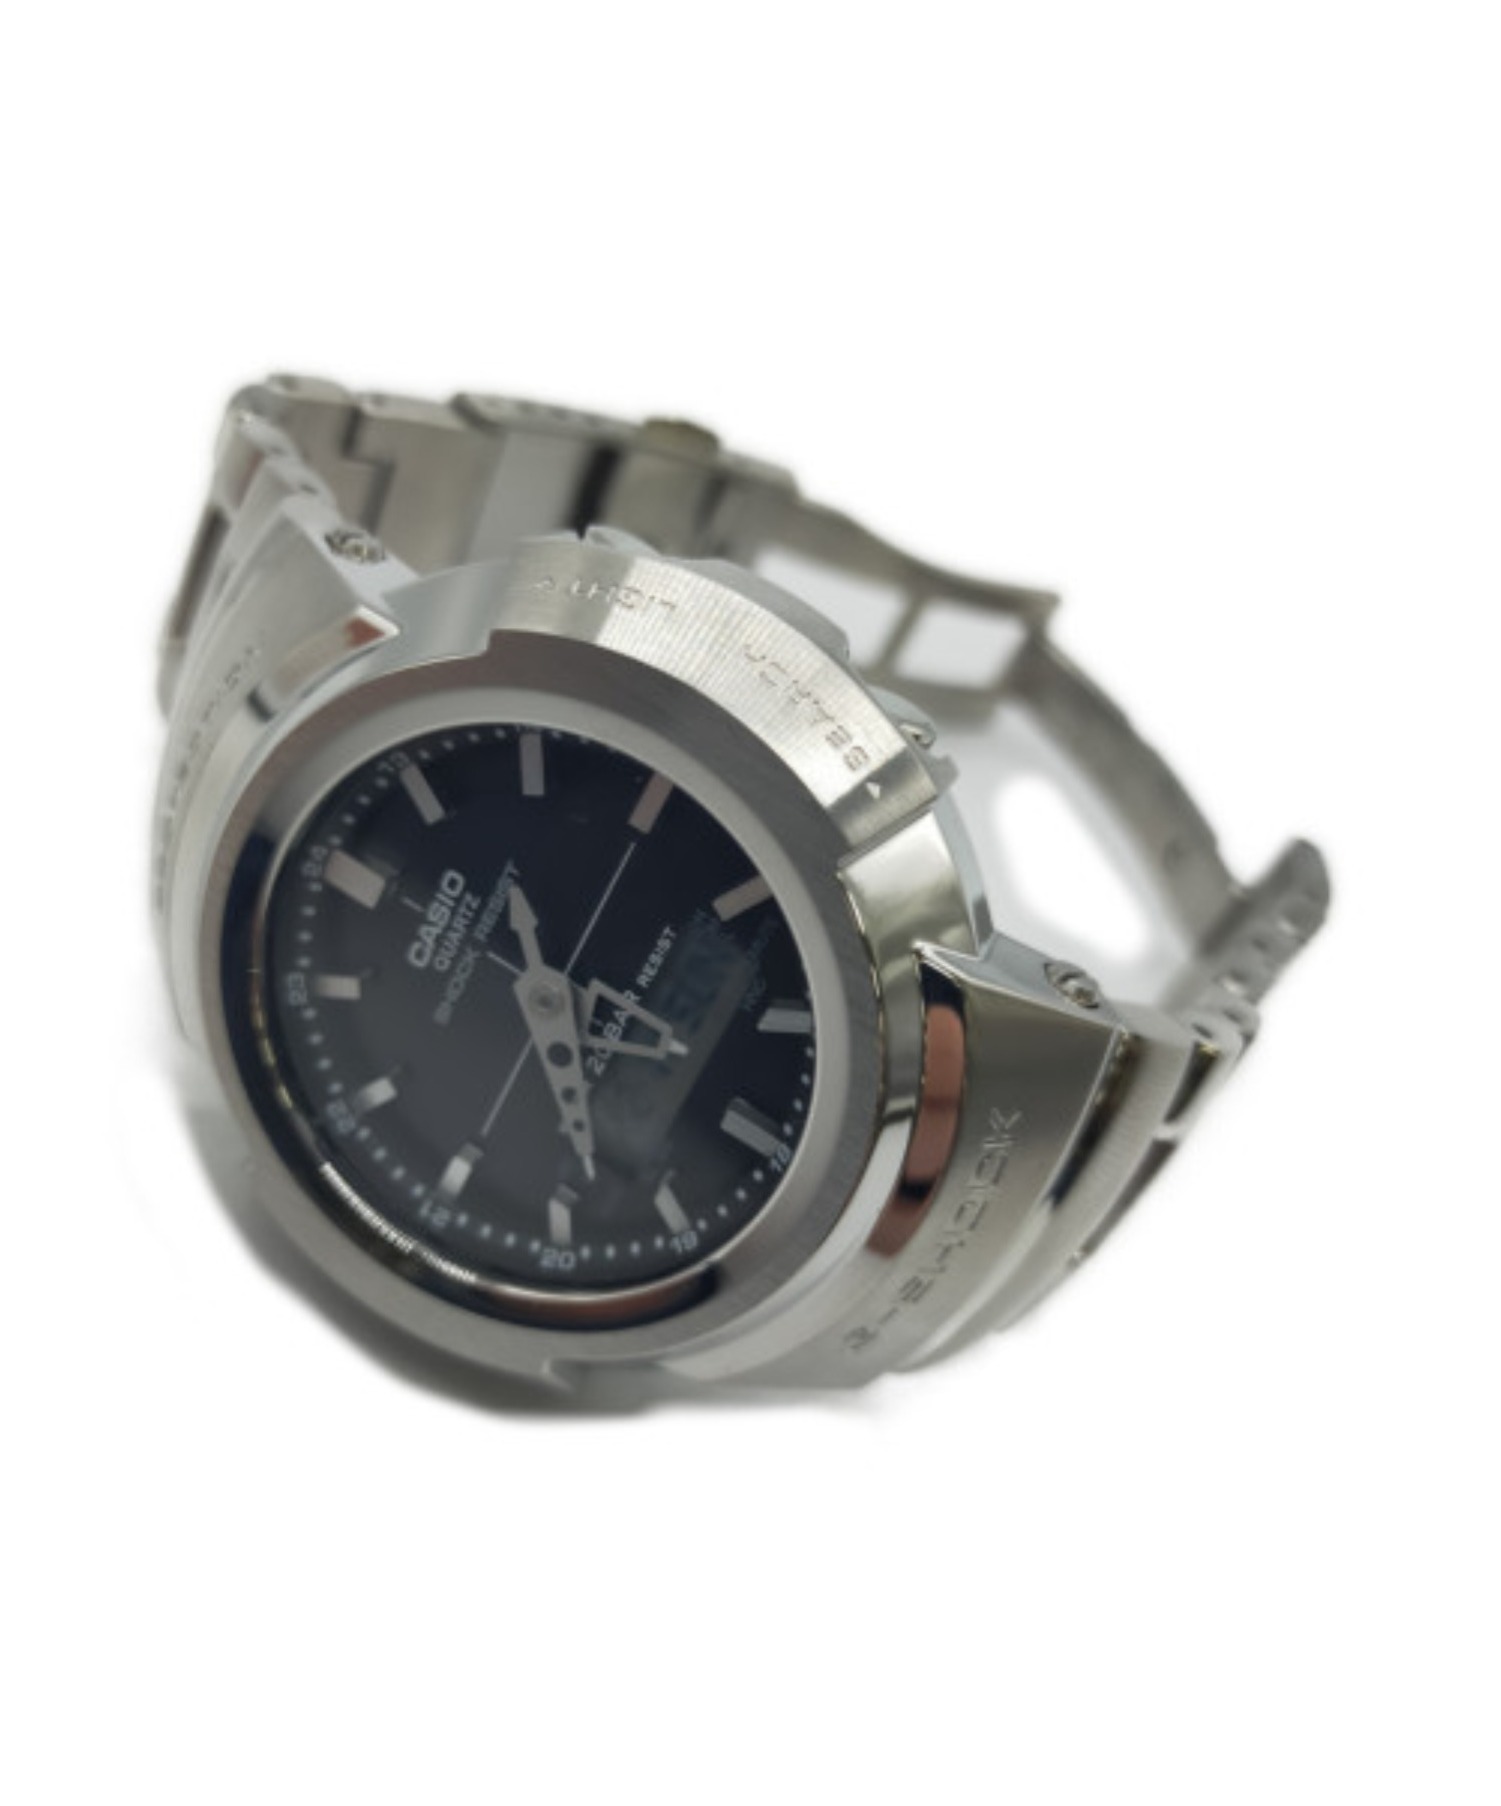 CASIO (カシオ) 腕時計 G-SHOCK AWM-500D-1AJF ソーラー充電 動作確認済み